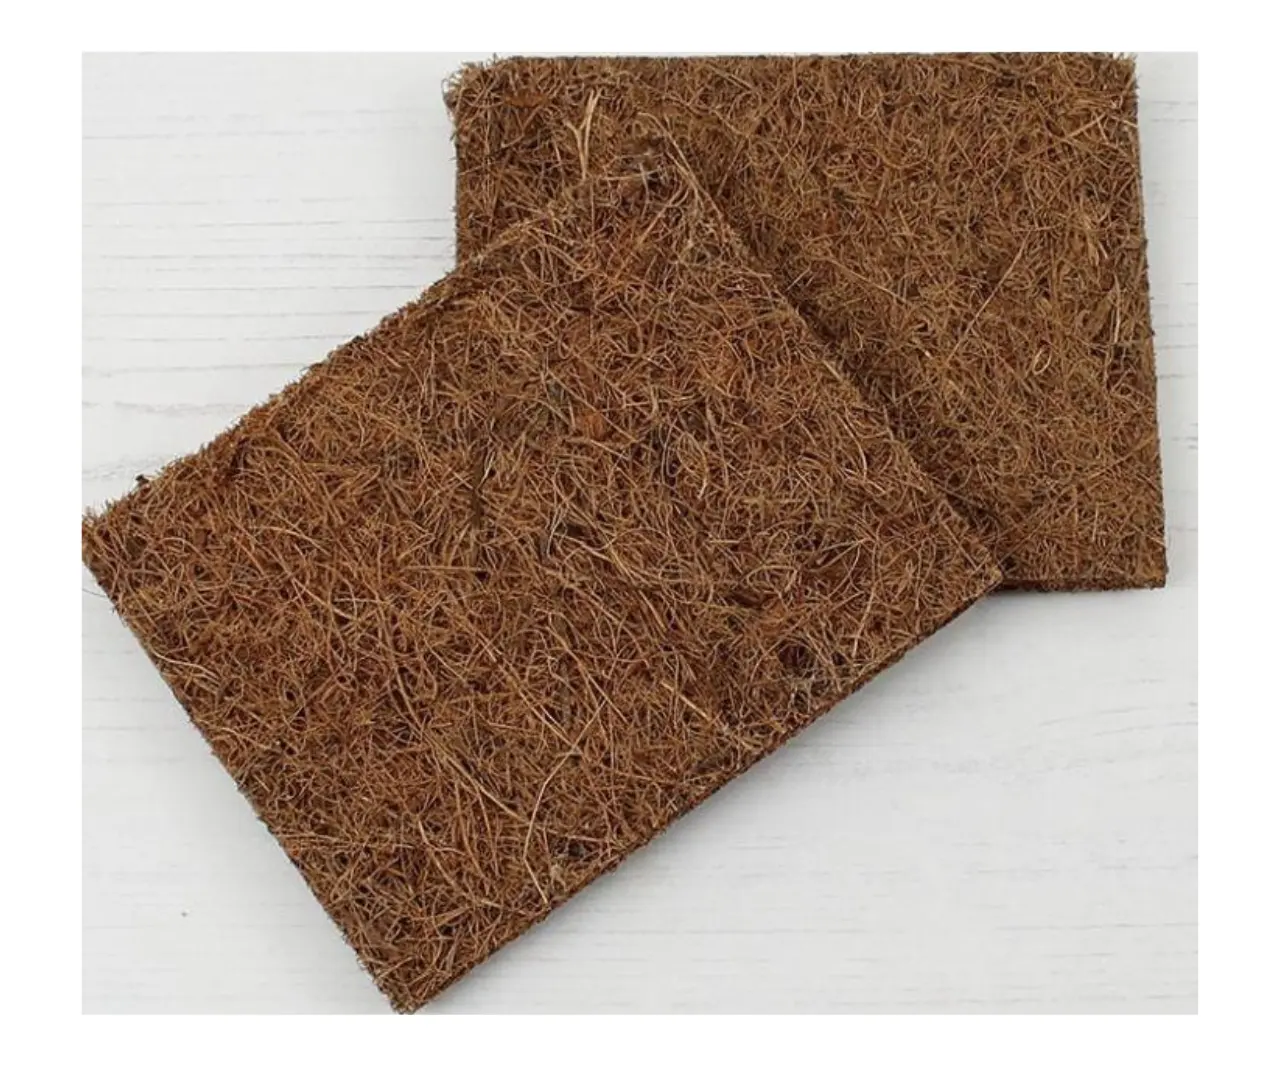 Grosir matras sabut ekspor dari Vietnam/karpet kelapa dari 100% serat sabut/jaring sabut & karpet